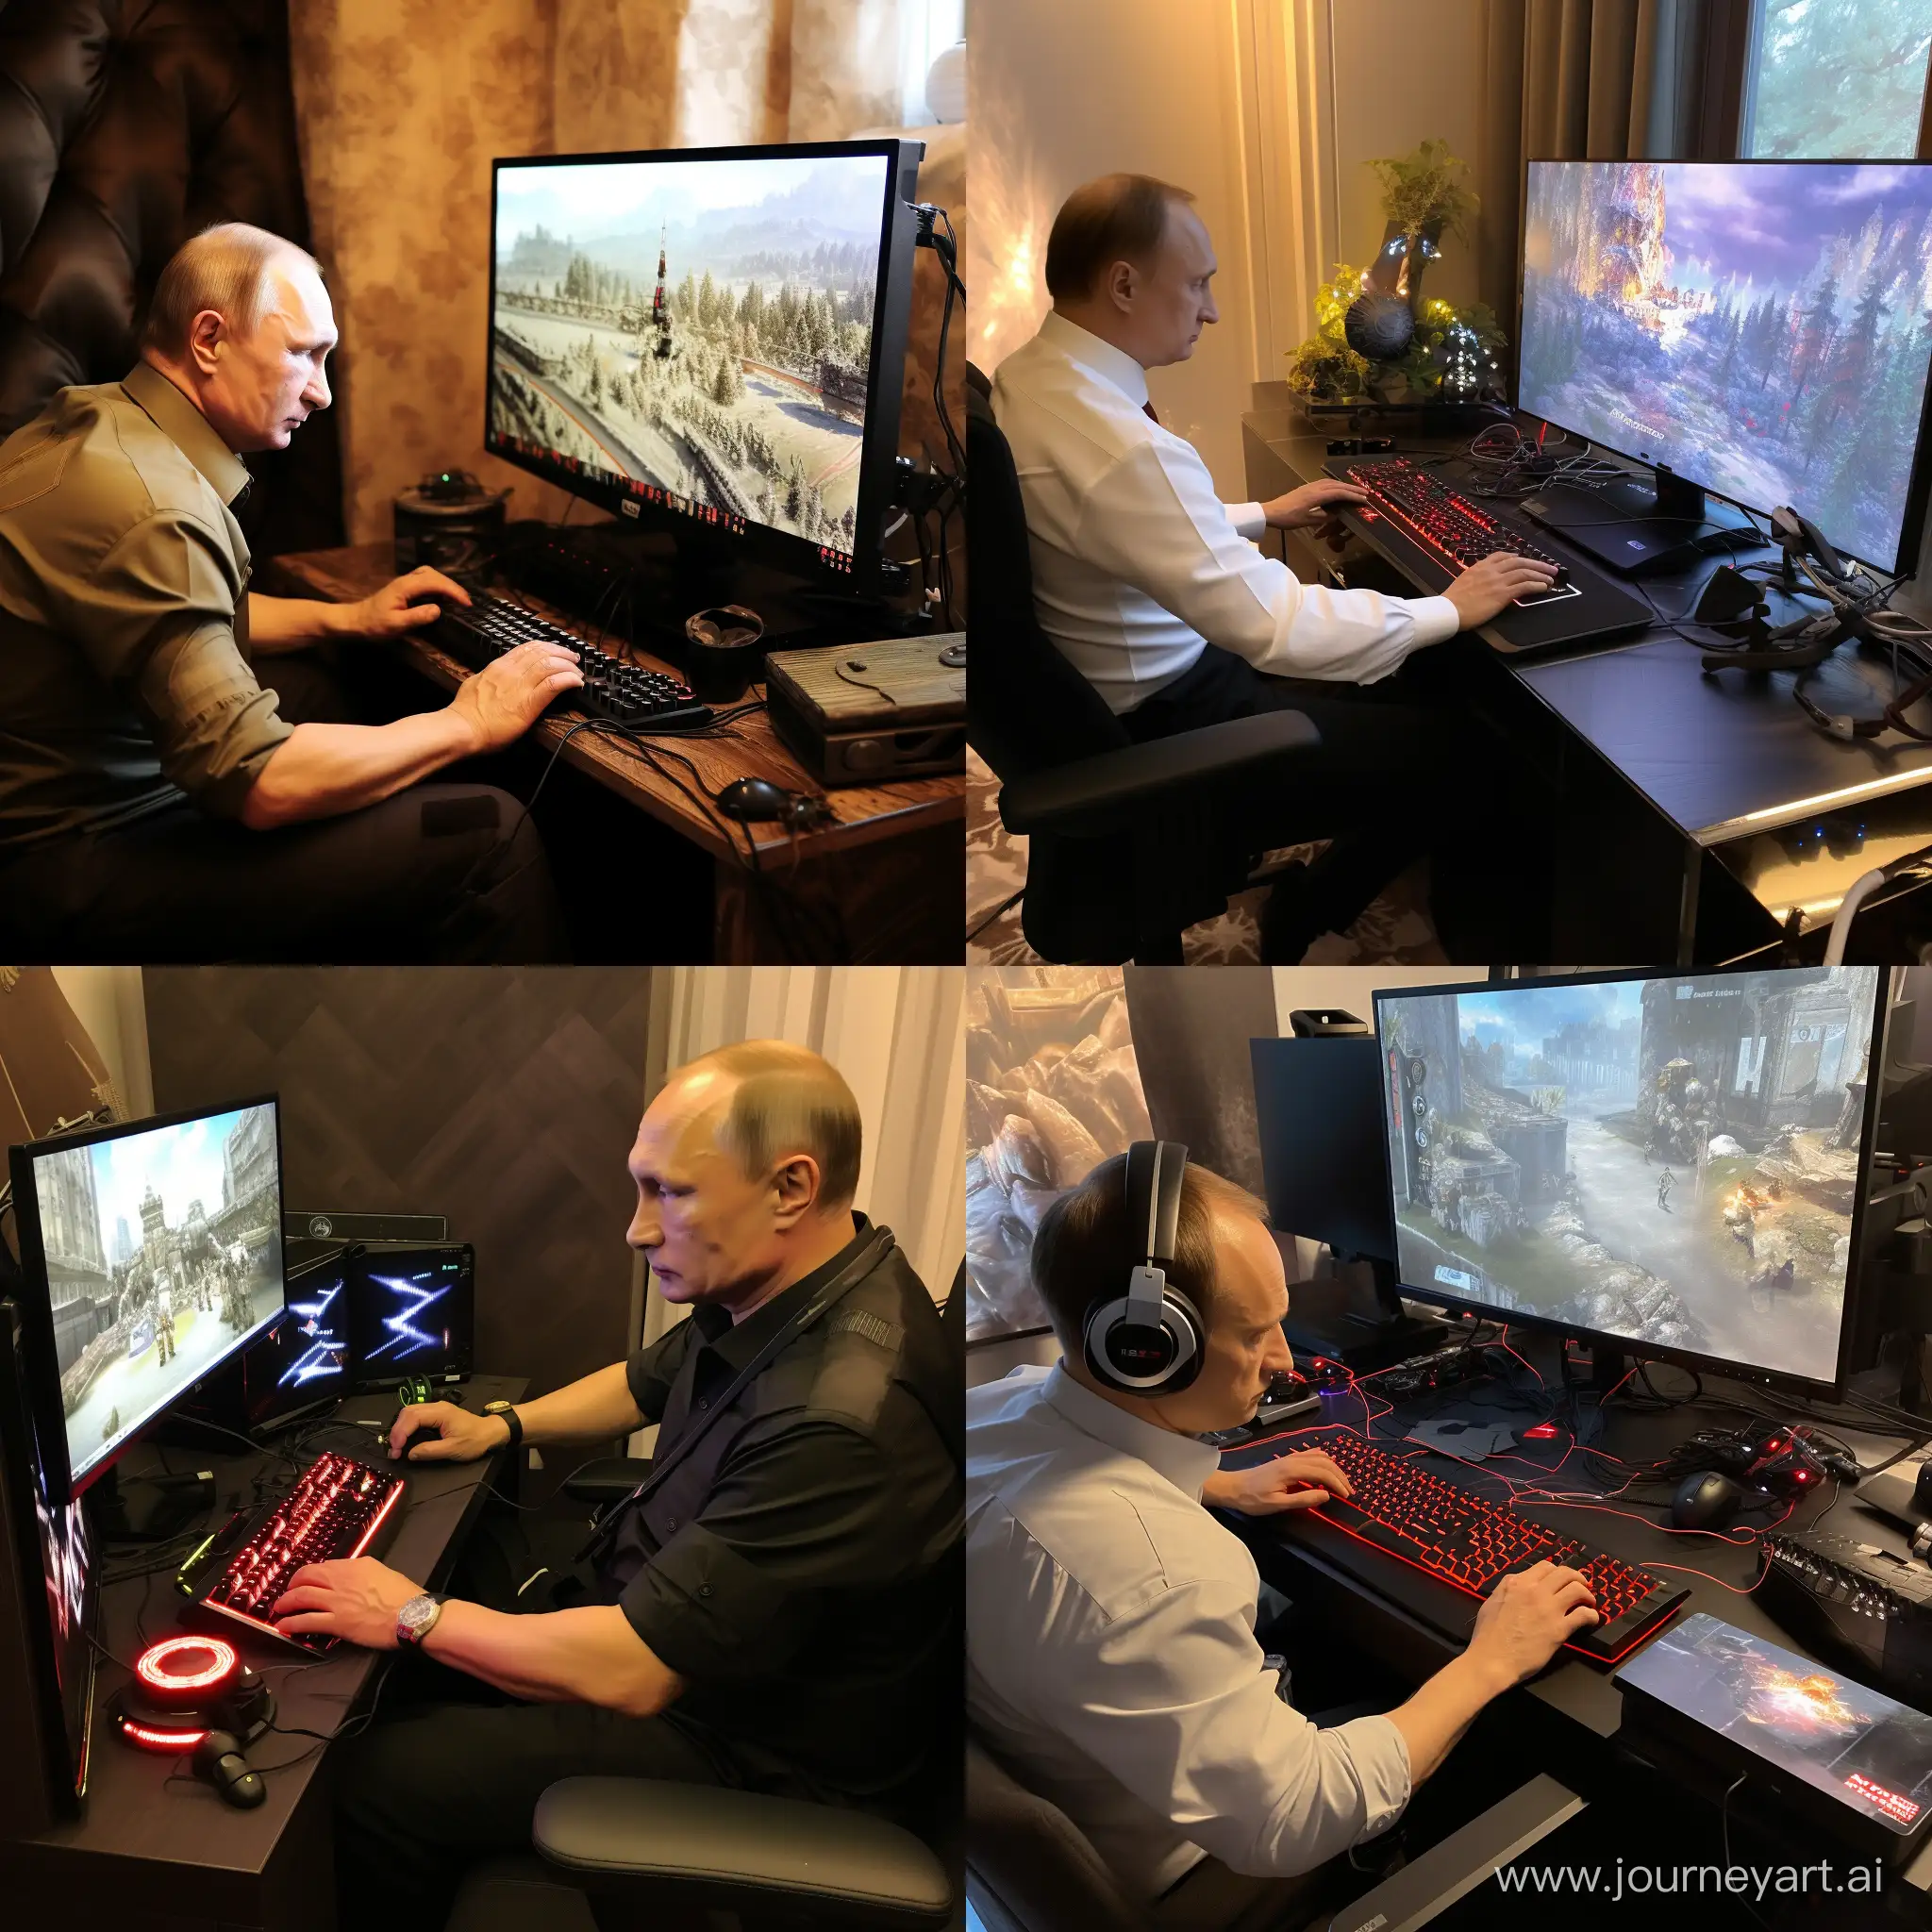 Vladimir-Putin-Enjoying-PC-Gaming-Session-in-11-Aspect-Ratio